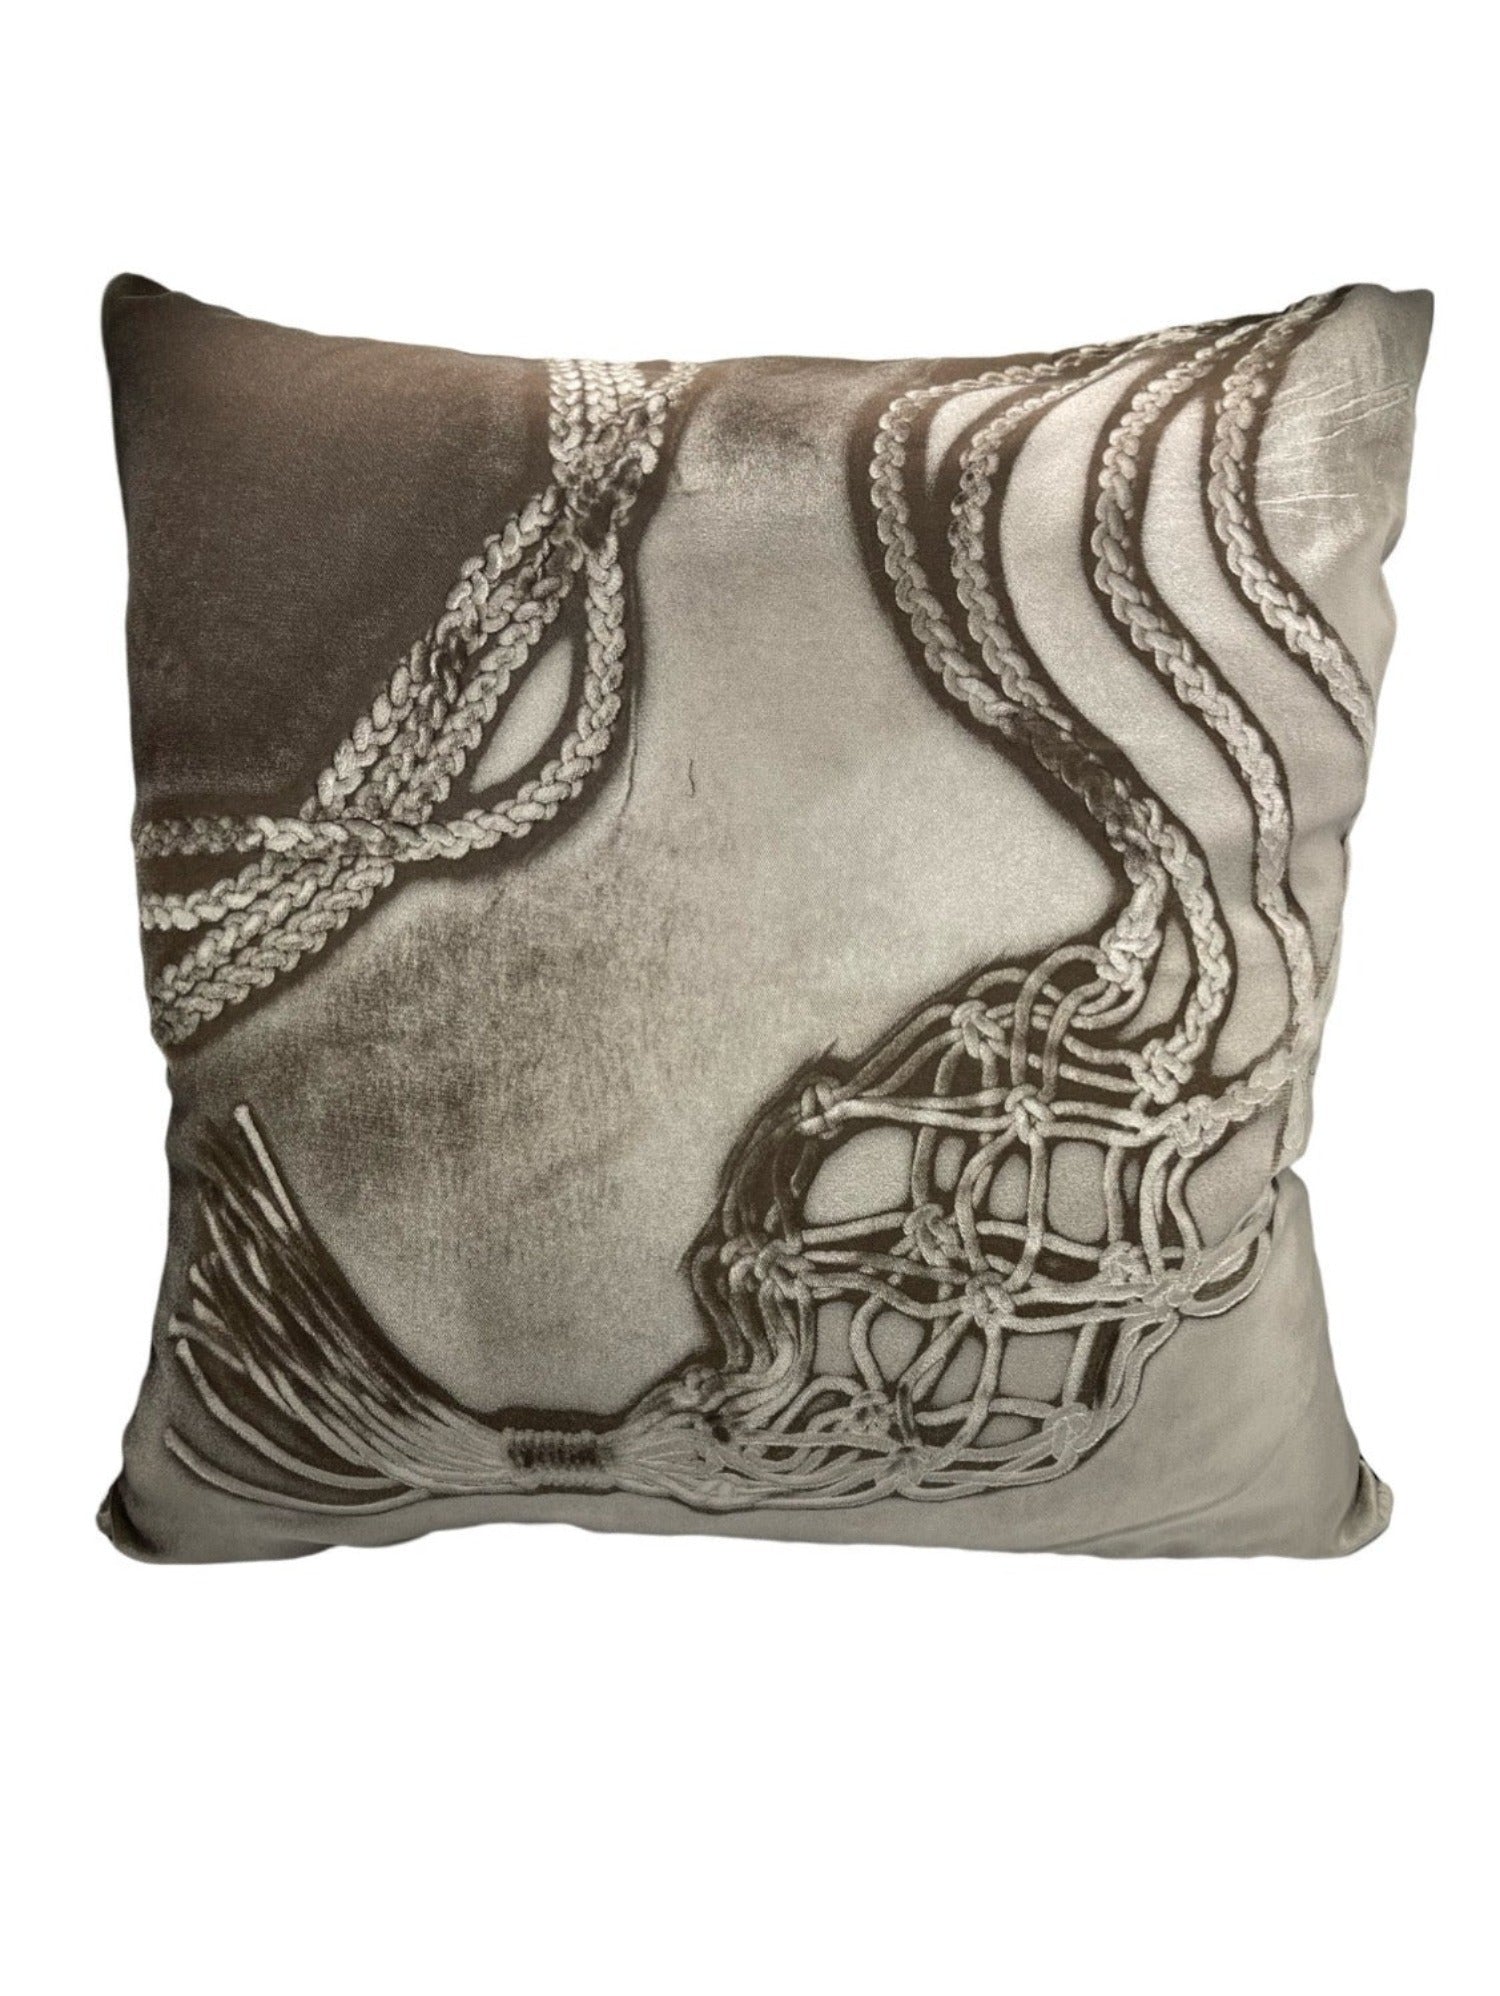 Hypknotic Cobble Signature Velvet Pillow